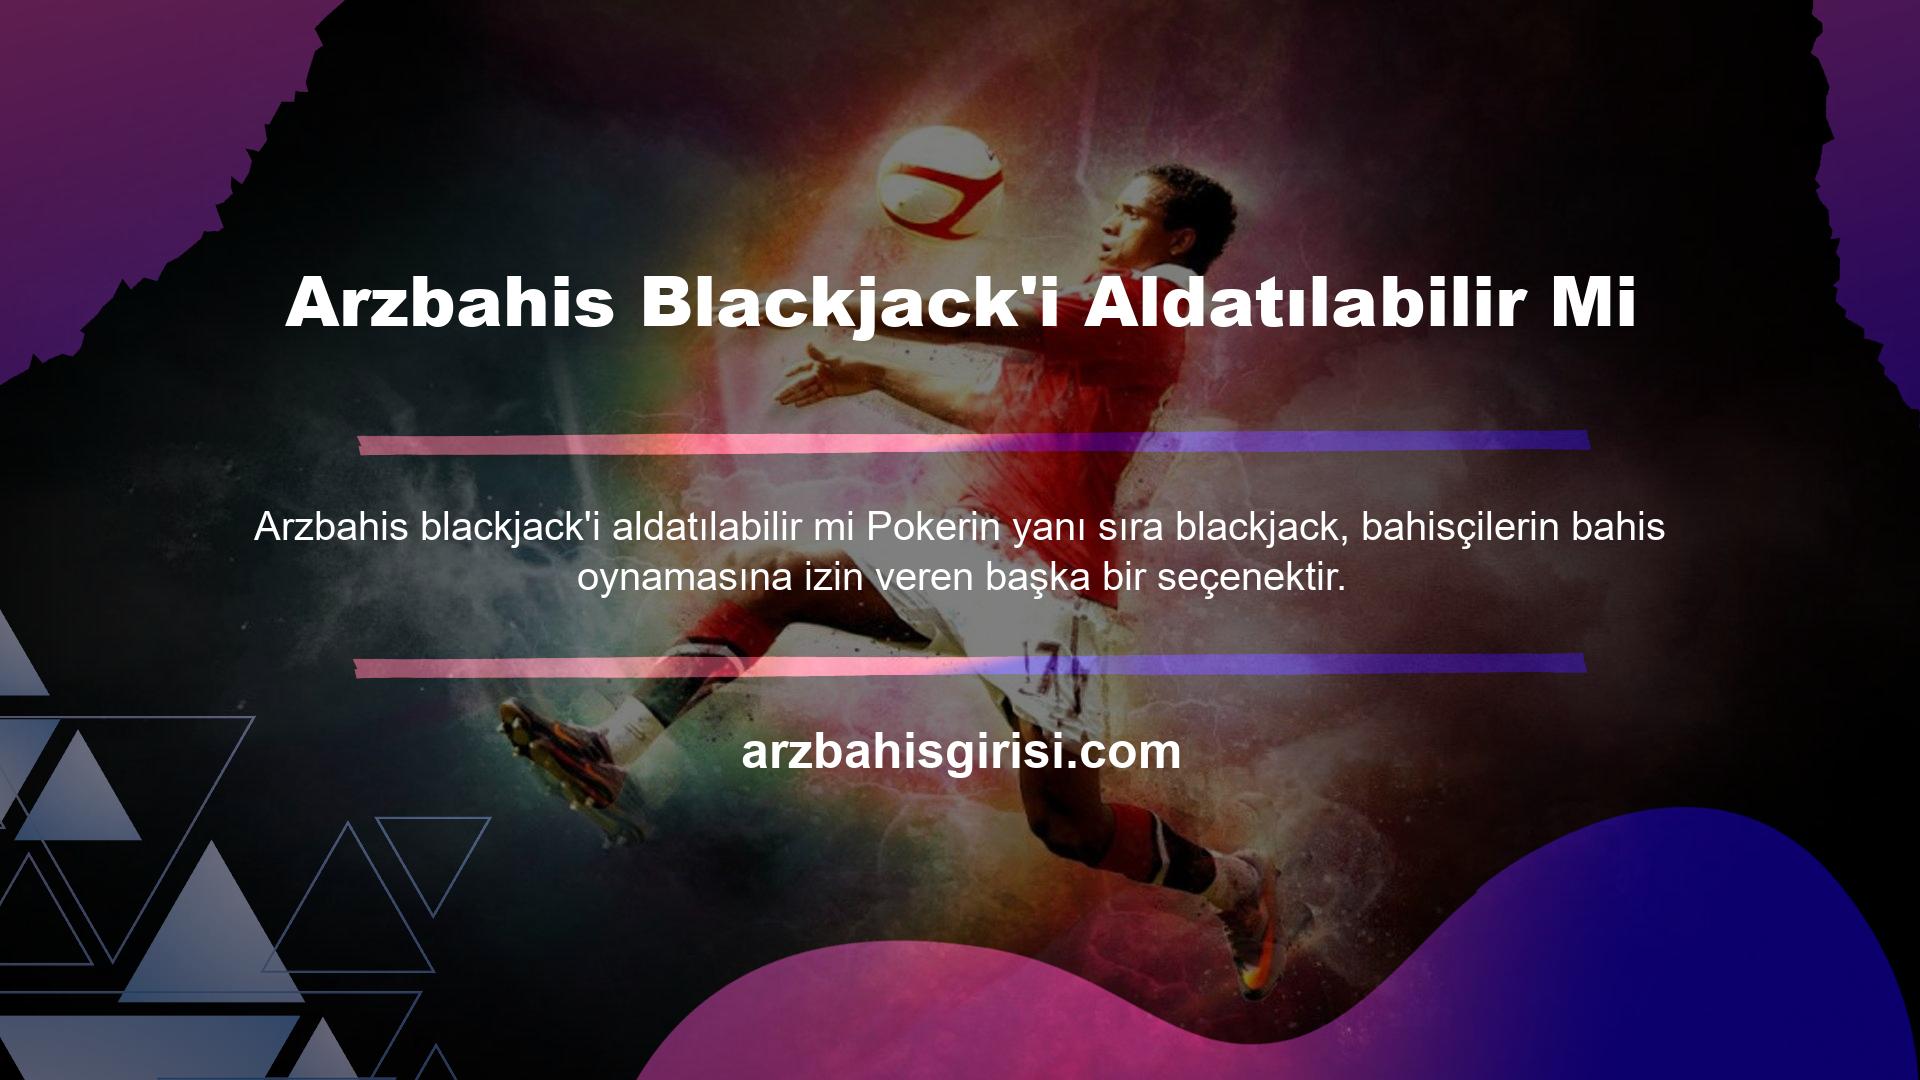 Arzbahis Blackjack'i Aldatılabilir Mi